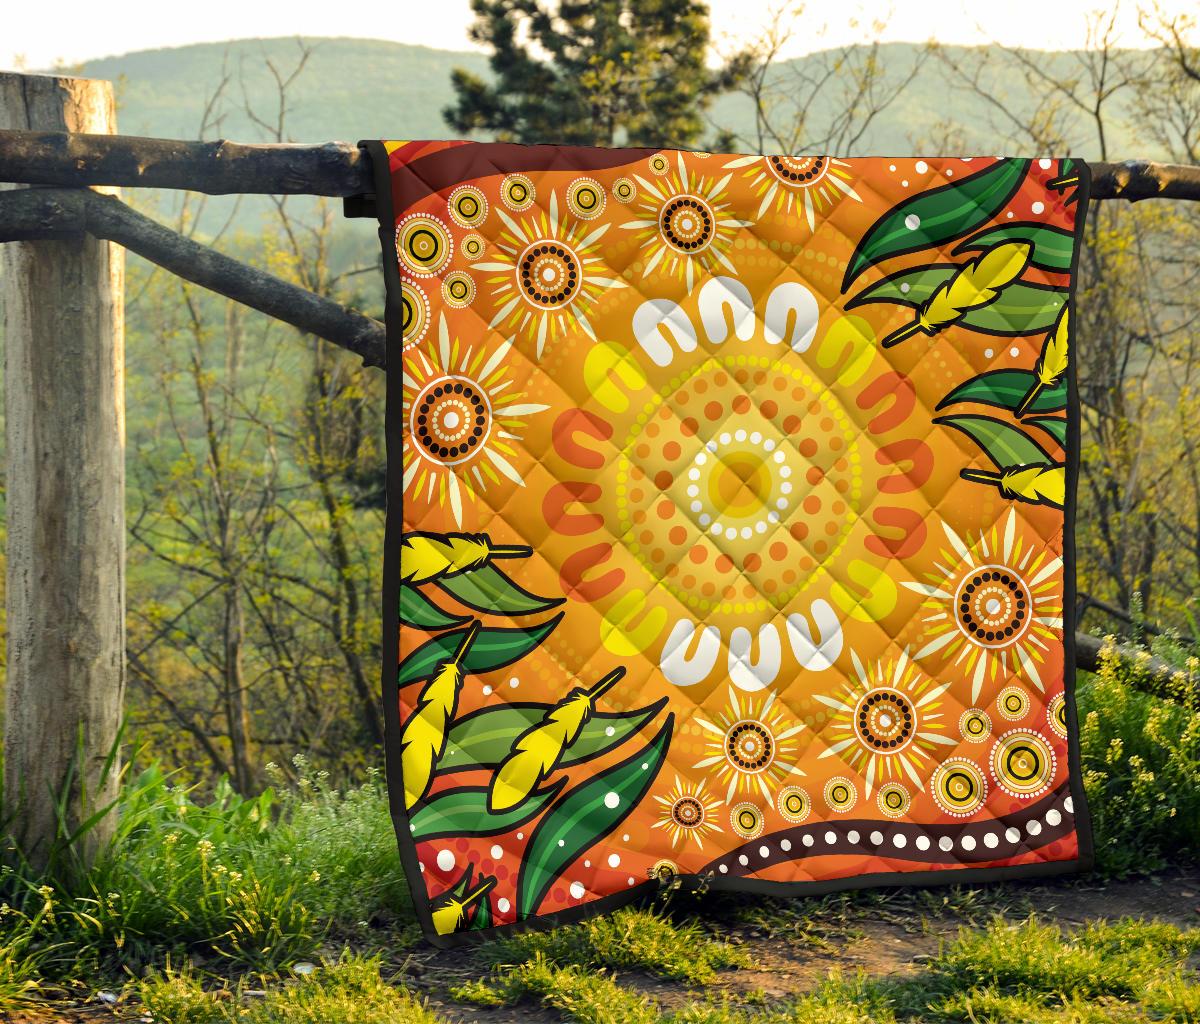 Aboriginal Premium Quilt - Indigenous Circle Leaf Patterns